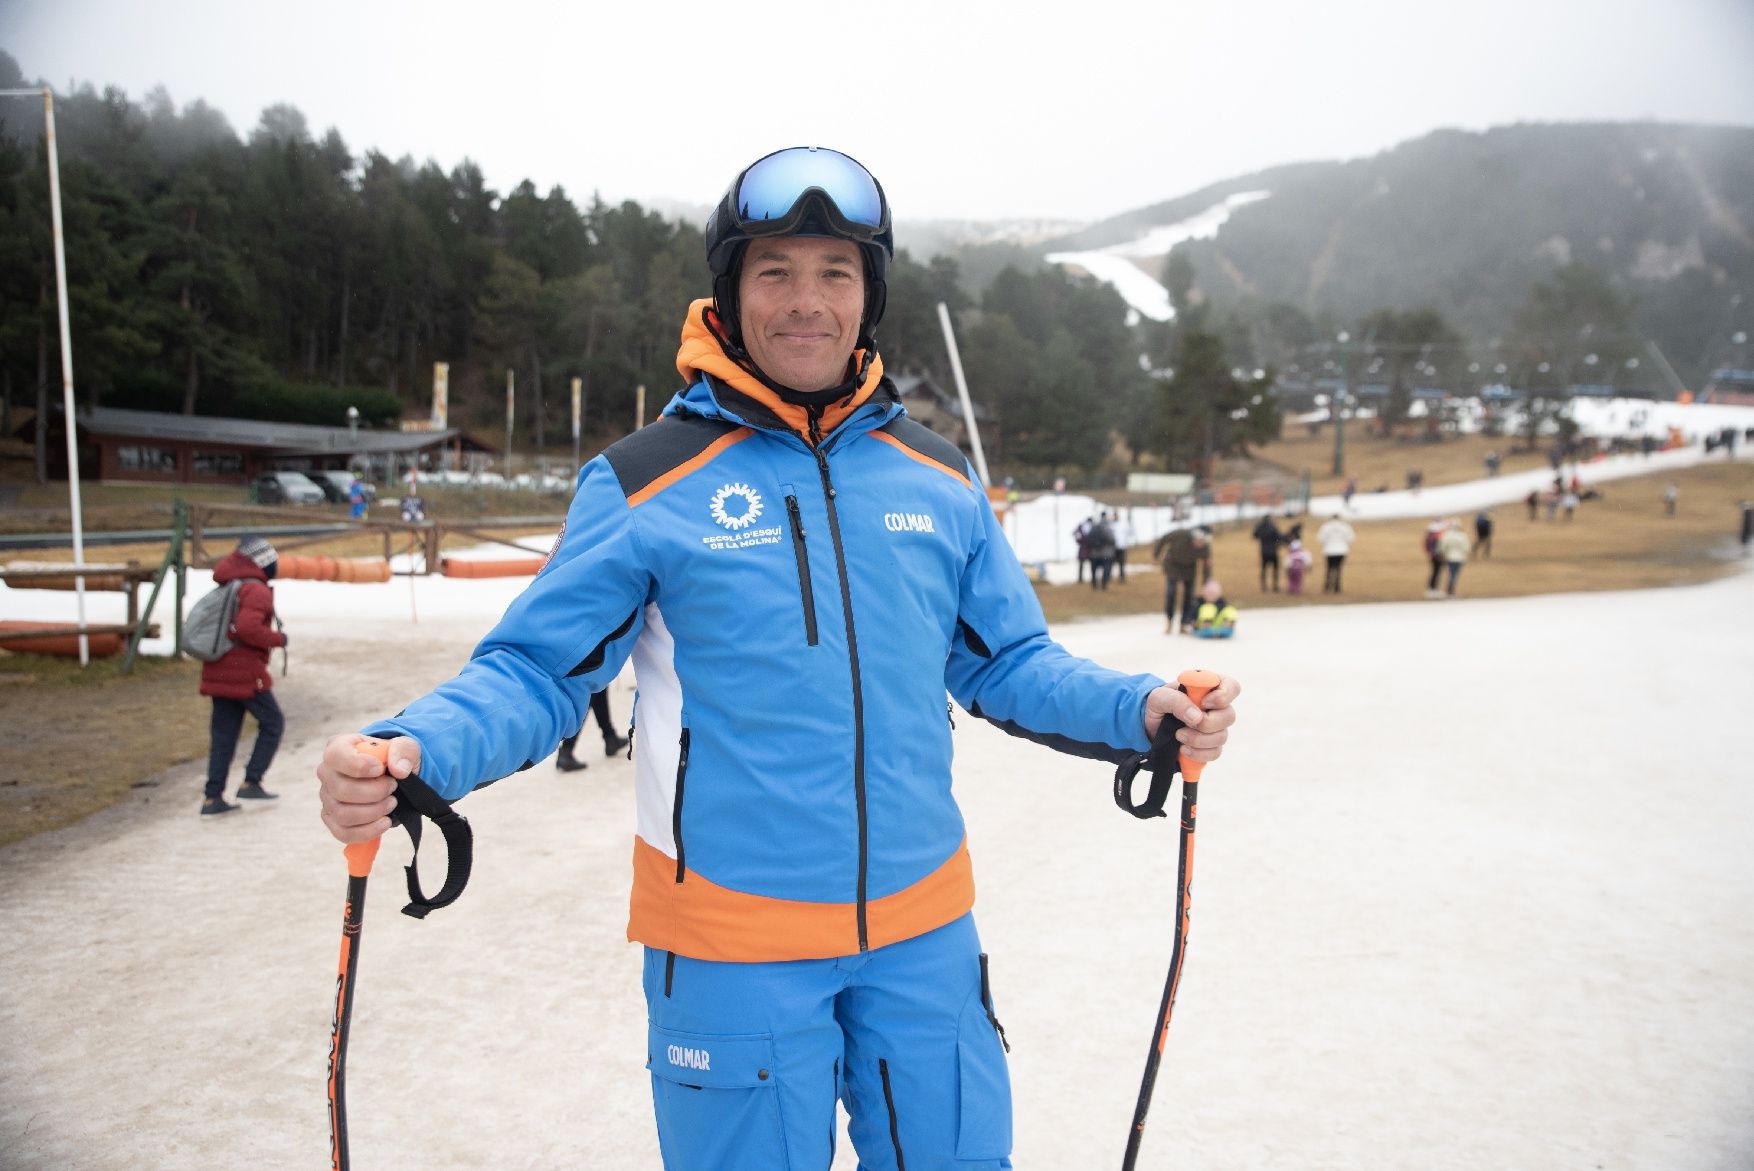 Les millors imatges de La Molina al seu final de temporada d'esquí de Nadal